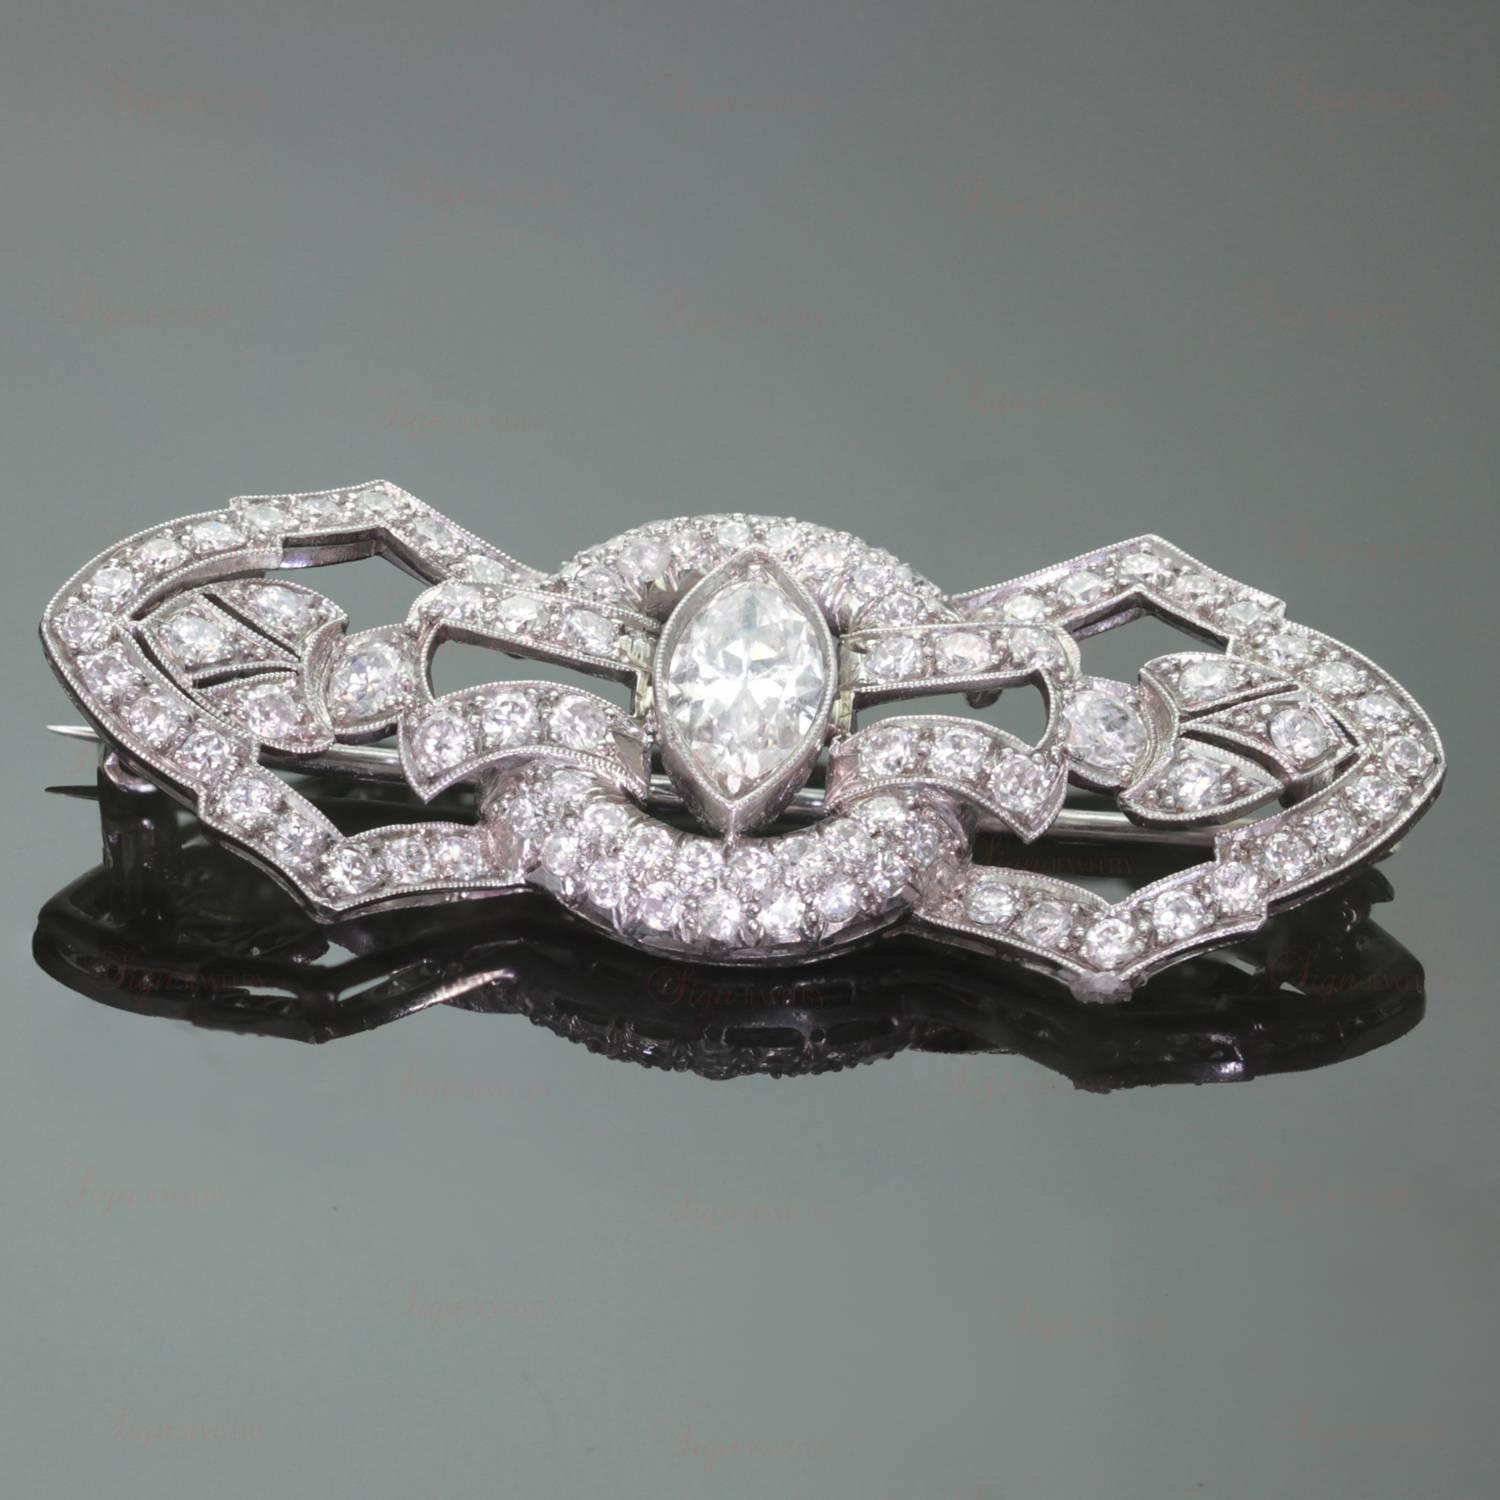 Diese atemberaubende Art-Deco-Brosche wurde von Hand aus Platin gefertigt und zeichnet sich durch ein filigranes Design mit einem sehr reinen und weißen Diamanten im Marquiseschliff von etwa 1 Karat in der Mitte aus, umgeben von 89 Diamanten im